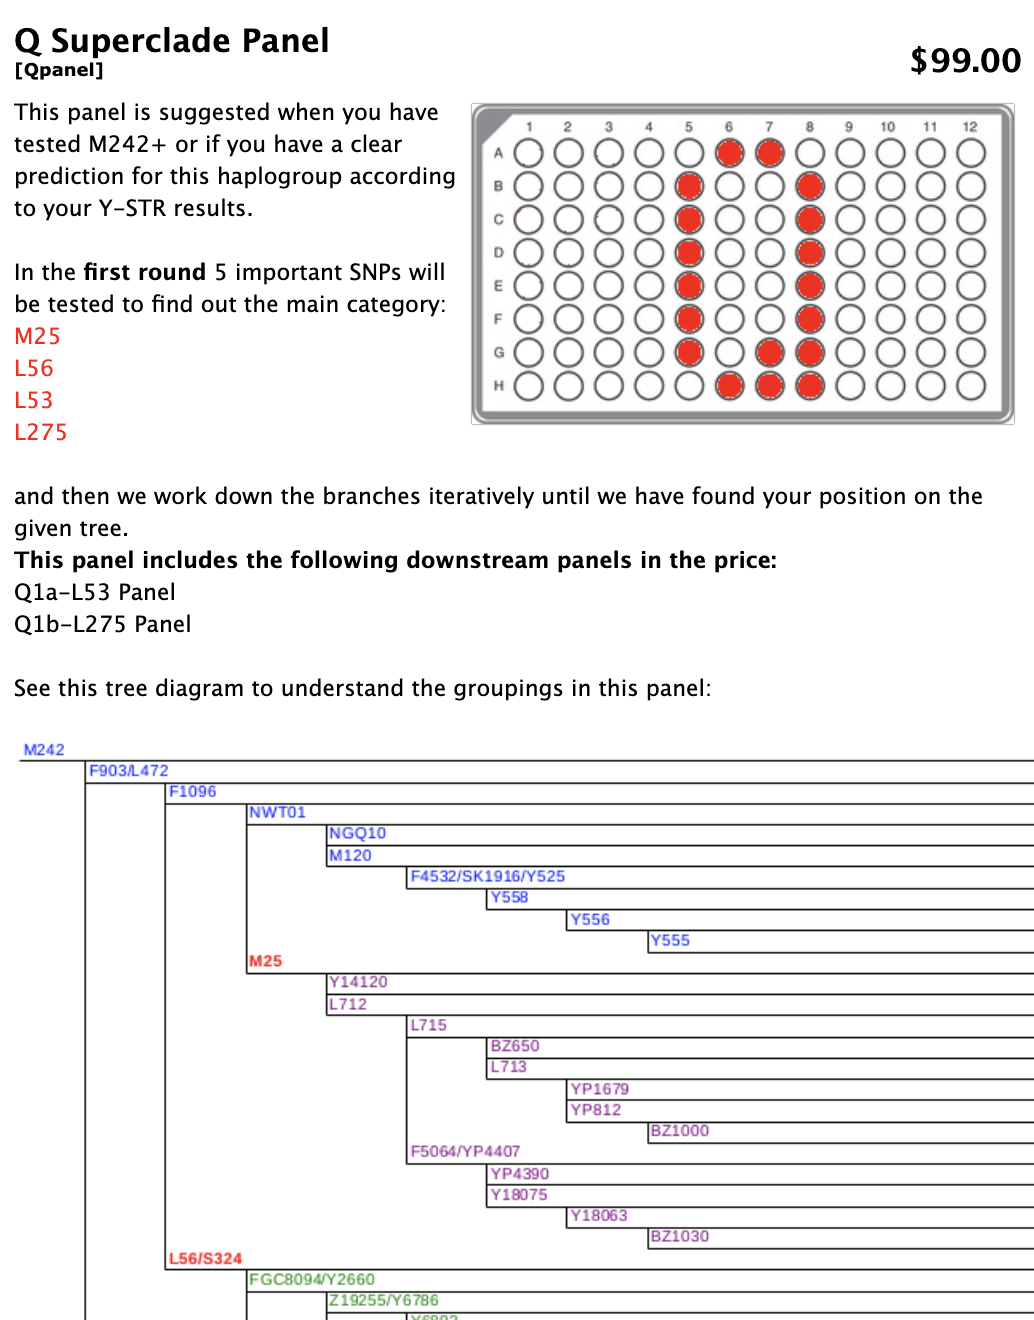 Детали панели Q Superclade с изображением диаграммы панели с несколькими кругами, окрашенными в красный цвет. Внизу - древовидная диаграмма, поясняющая группировки на панели